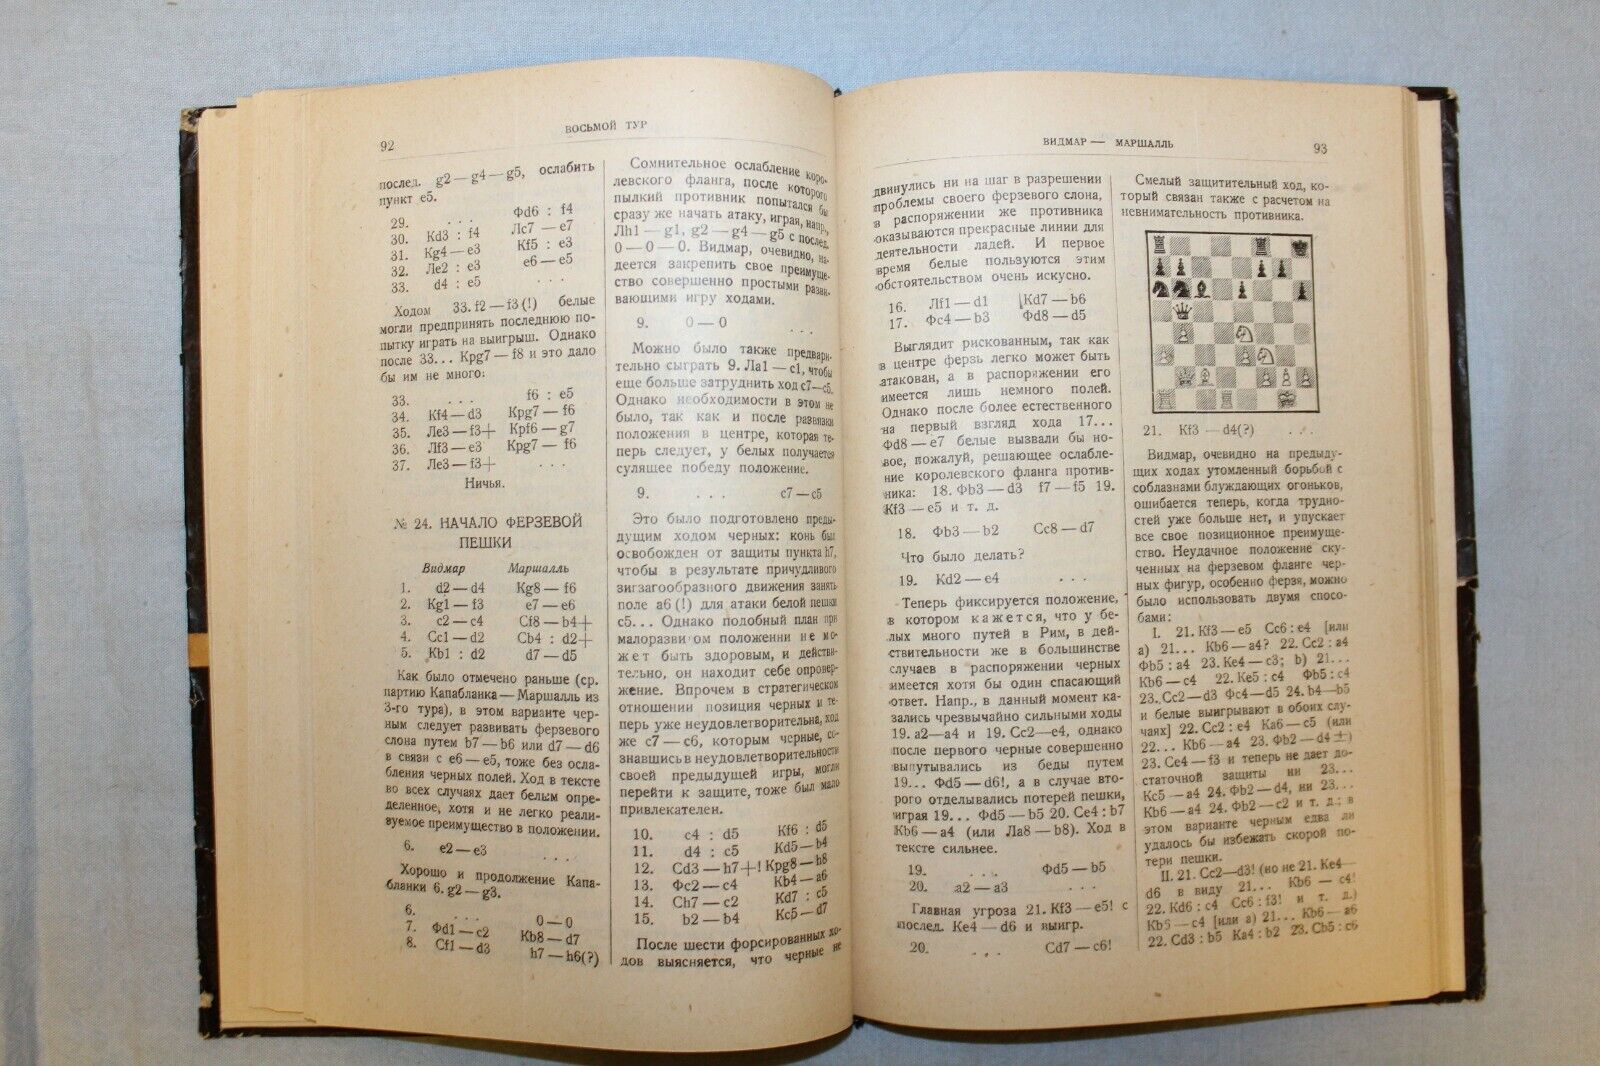 11499.Russian Chess Book: Alekhine. International chess tournament New-York 1927.1930